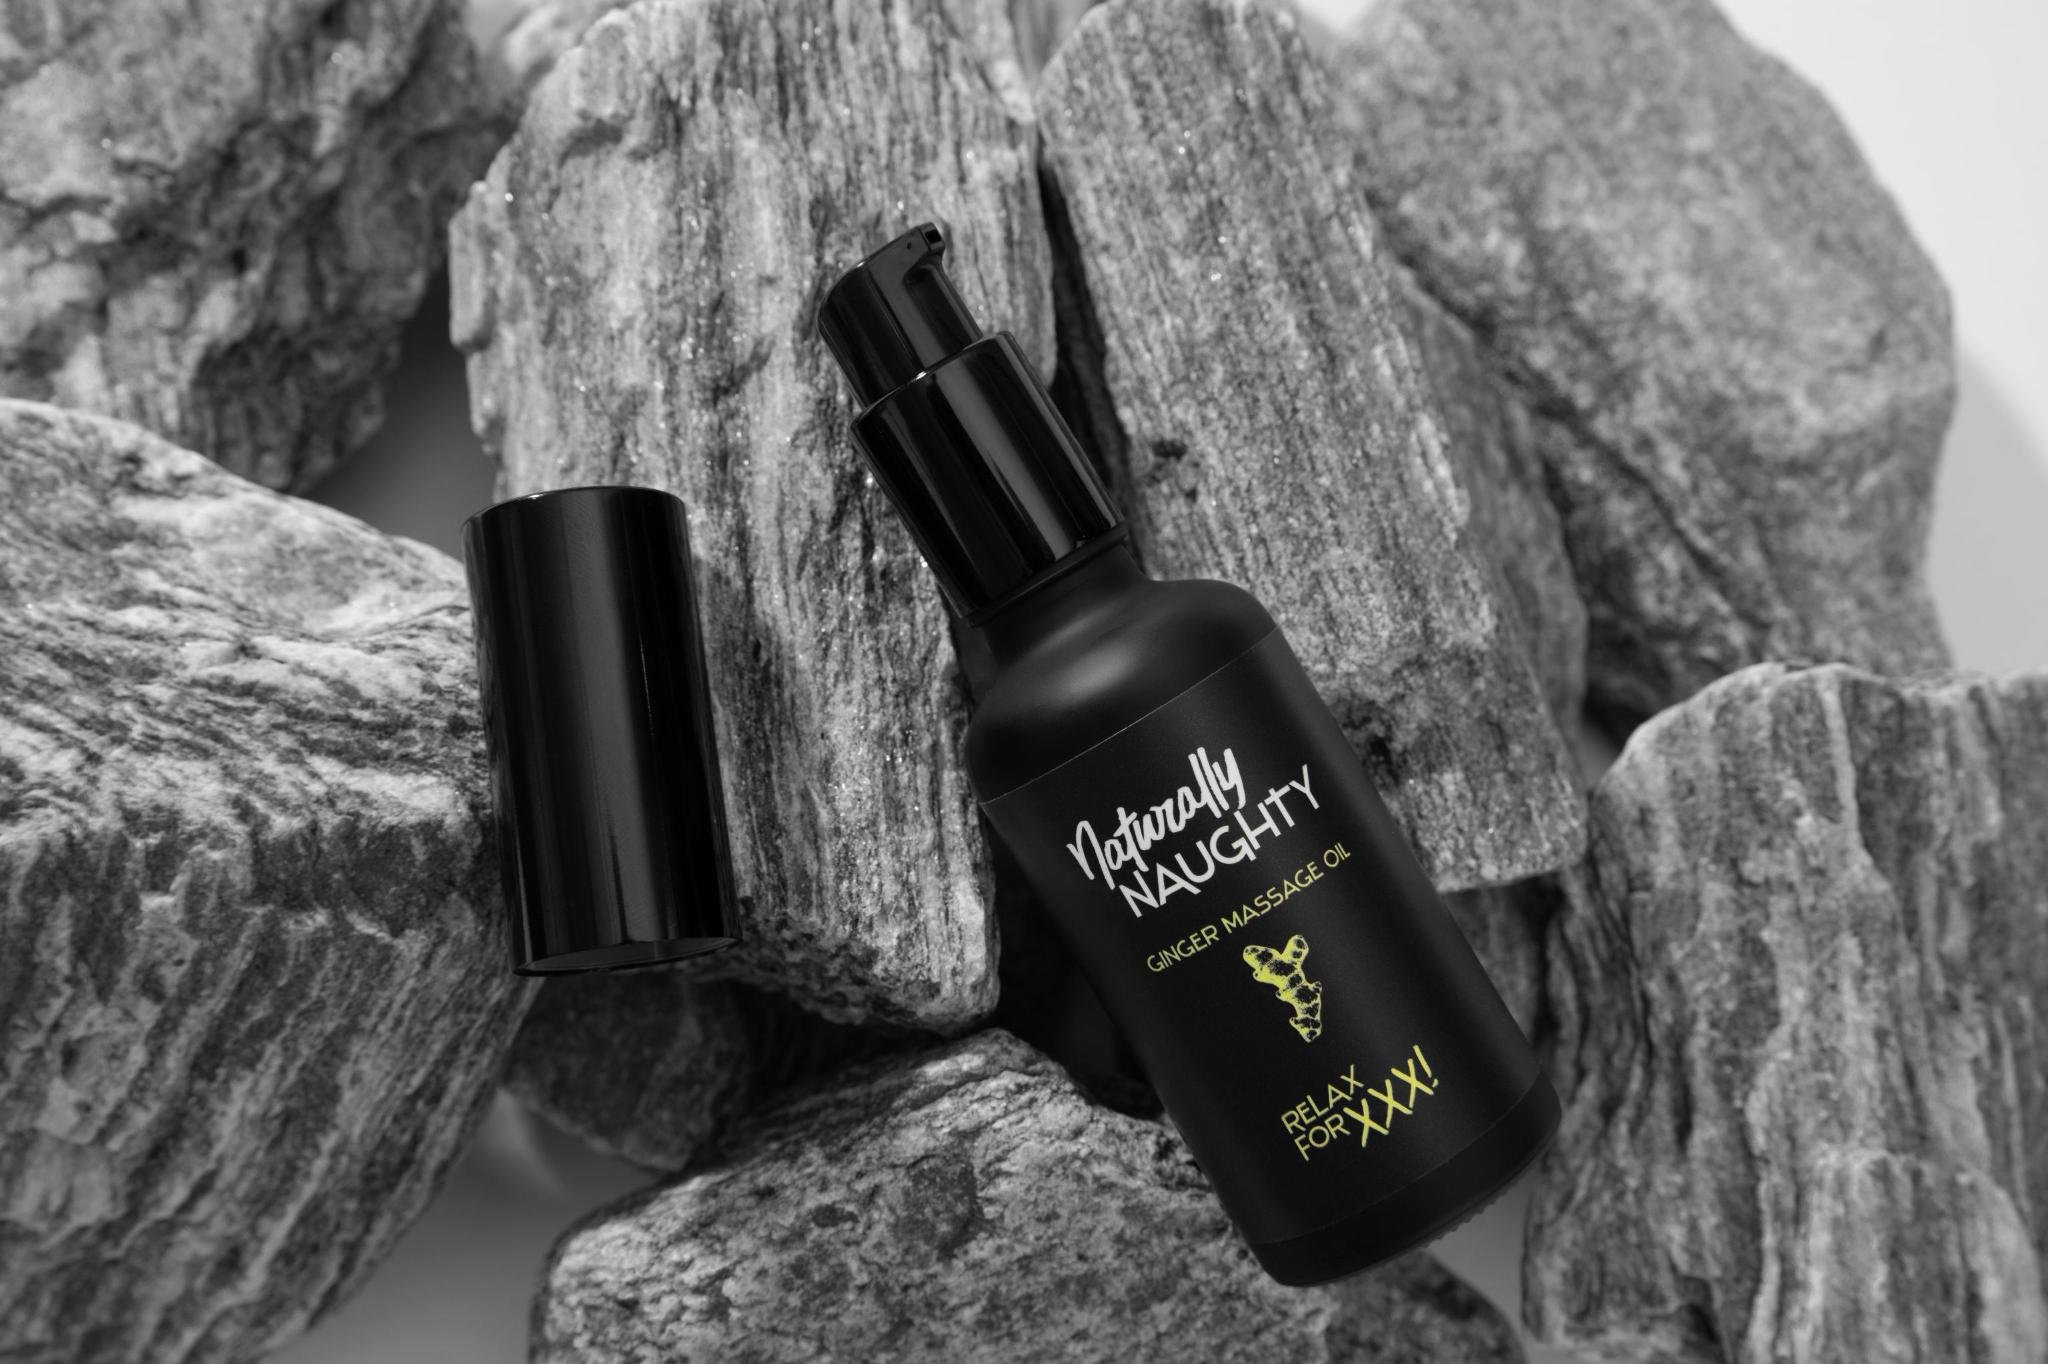 Produktbild: Die schwarze Pump-Glasflasche des Ingwer Massageöls steht auf einem Felsvorsprung einer Felswand. Der Deckel ist ab.